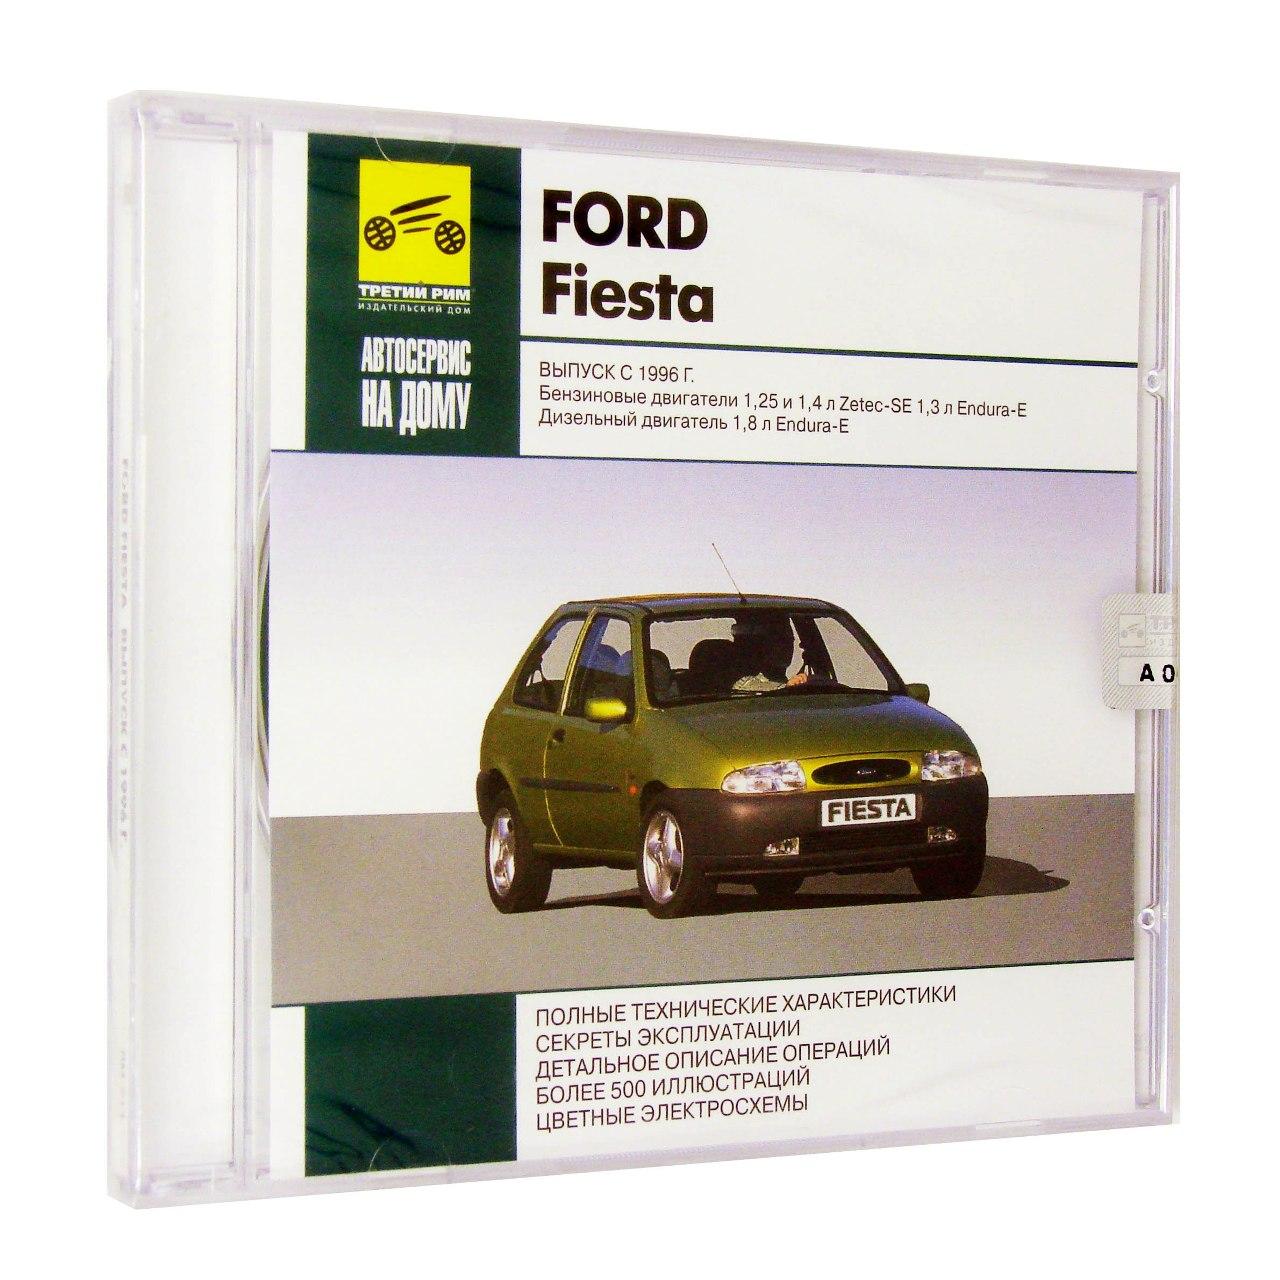 Компьютерный компакт-диск Ford Fiesta Выпуск с 1996: Автосервис на дому (ПК), фирма "RMG Multimedia", 1CD